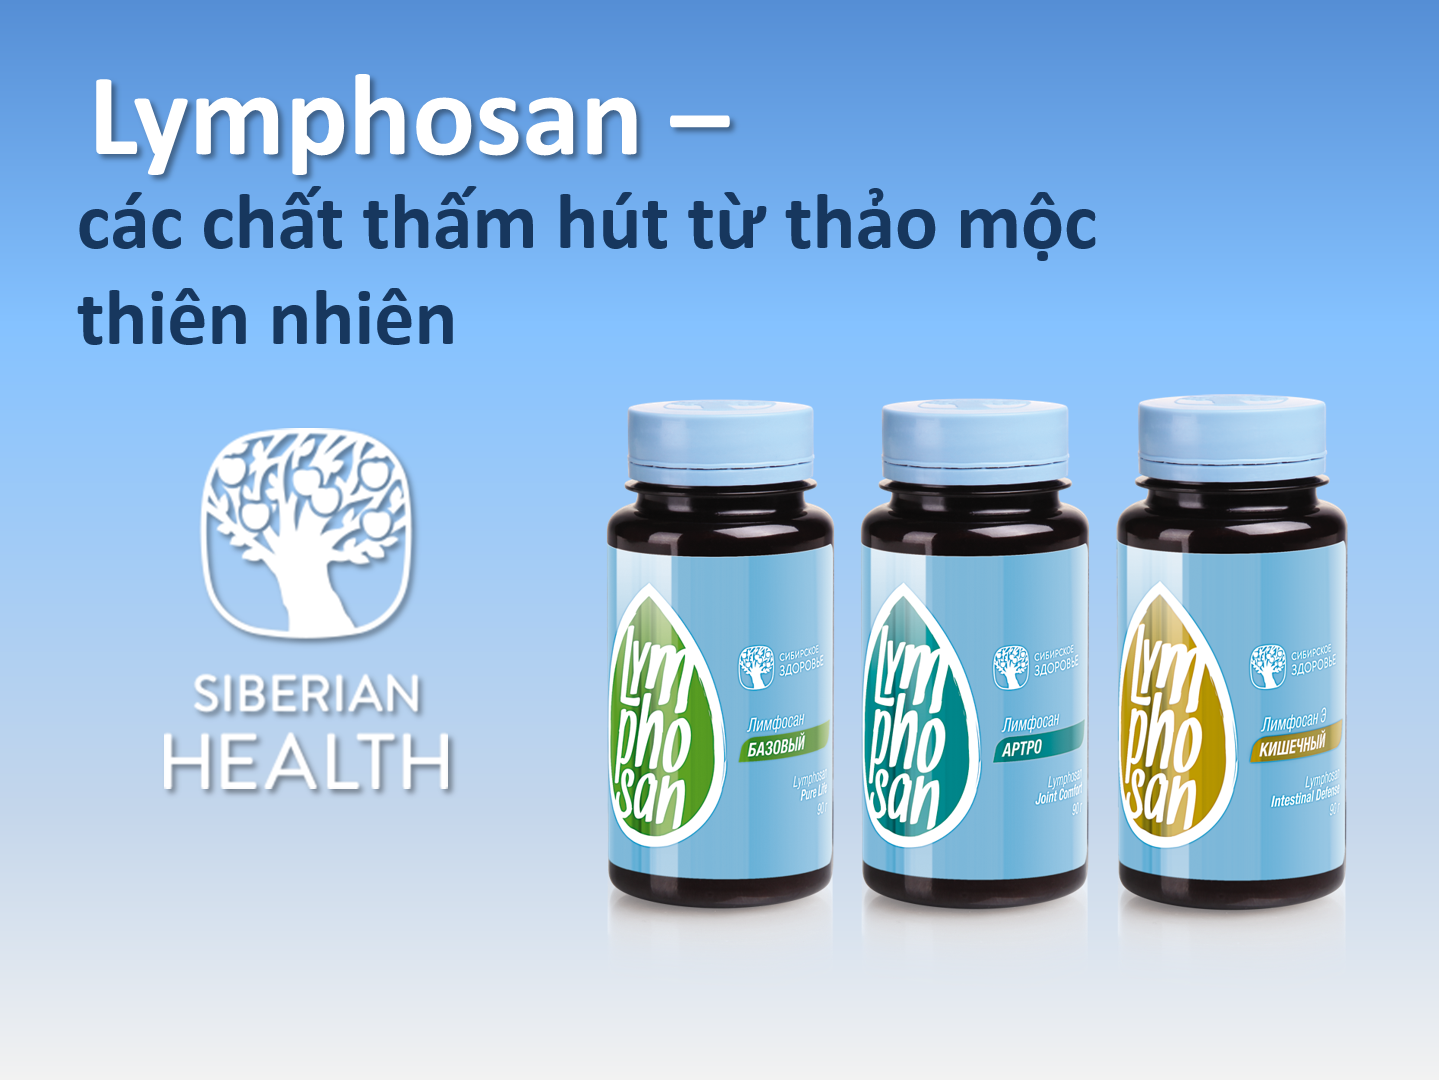 Video hướng dẫn sử dụng sản phẩm Lymphosan của Siberian Wellness